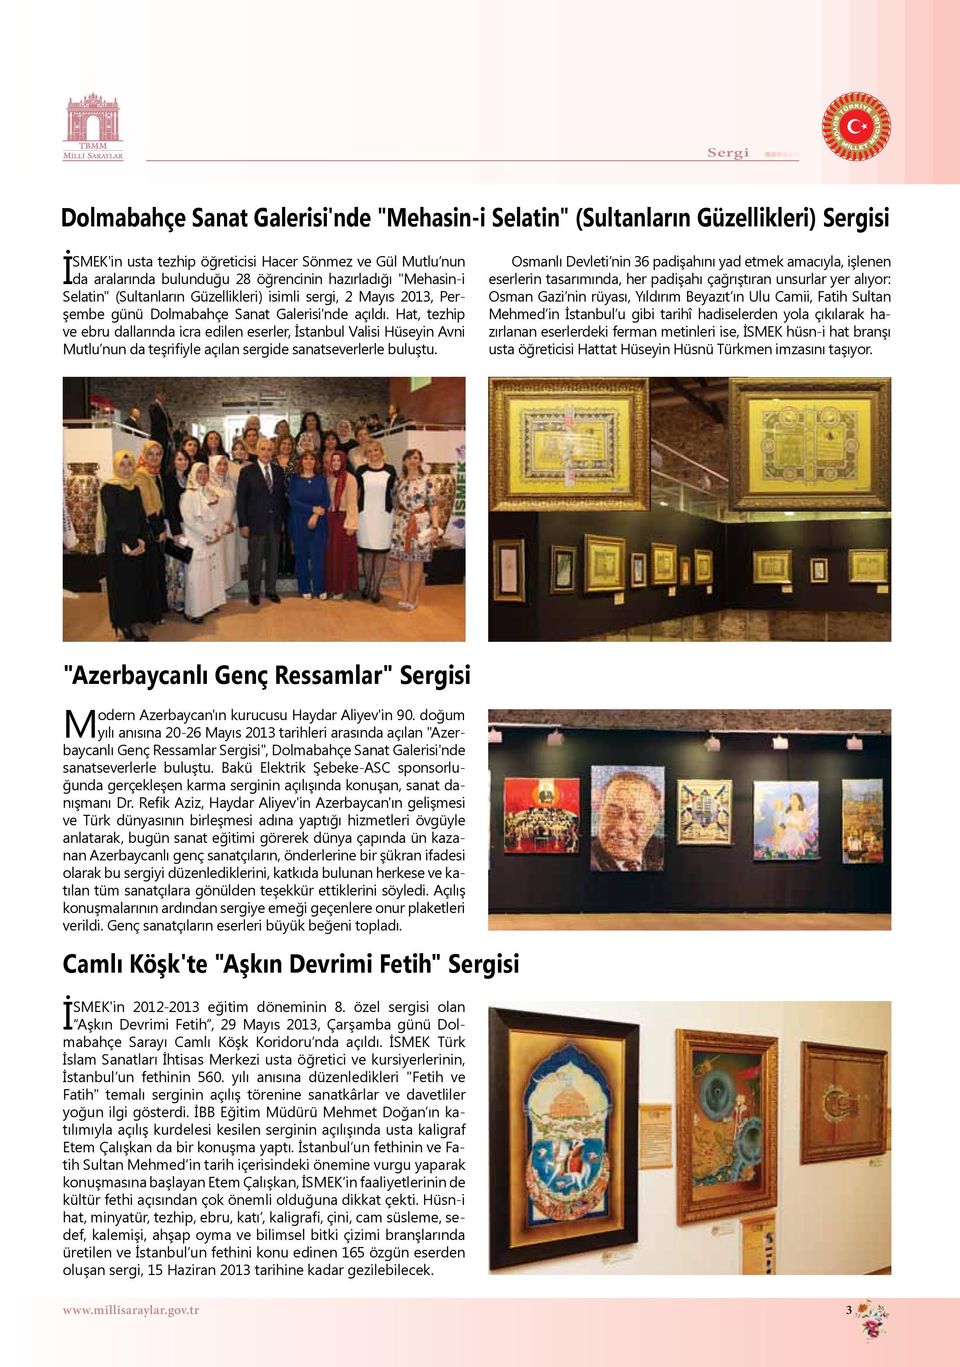 Hat, tezhip ve ebru dallarında icra edilen eserler, İstanbul Valisi Hüseyin Avni Mutlu nun da teşrifiyle açılan sergide sanatseverlerle buluştu.